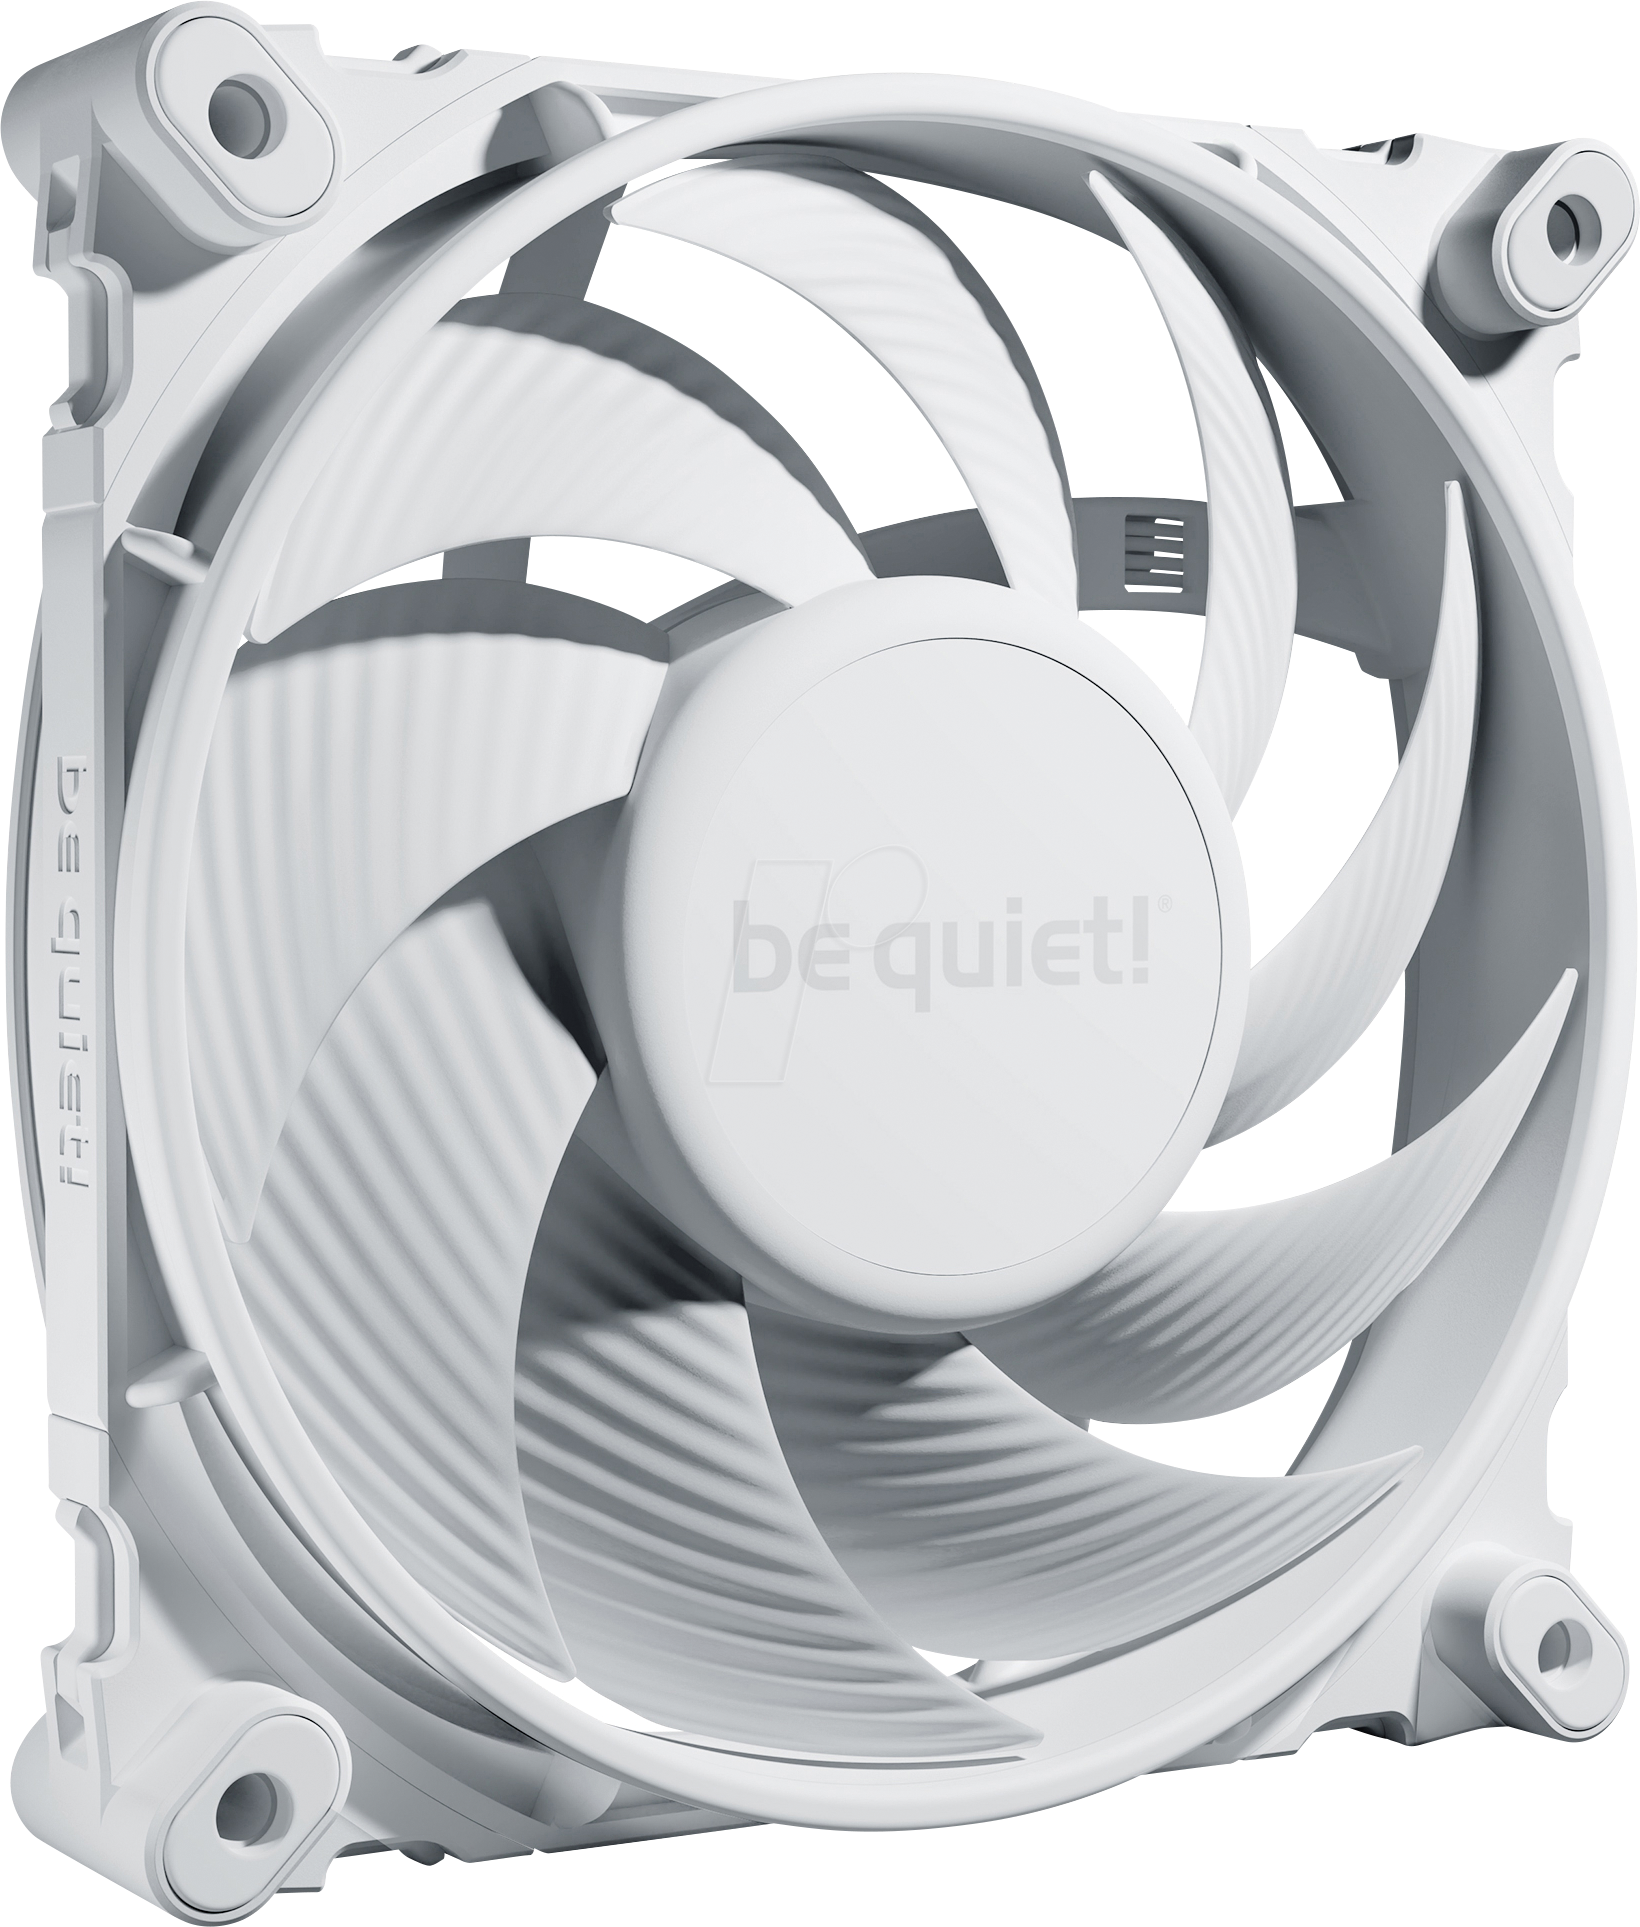 BQT BL115 - be quiet! SILENT WINGS 4 White 120mm PWM high-speed von BEQUIET